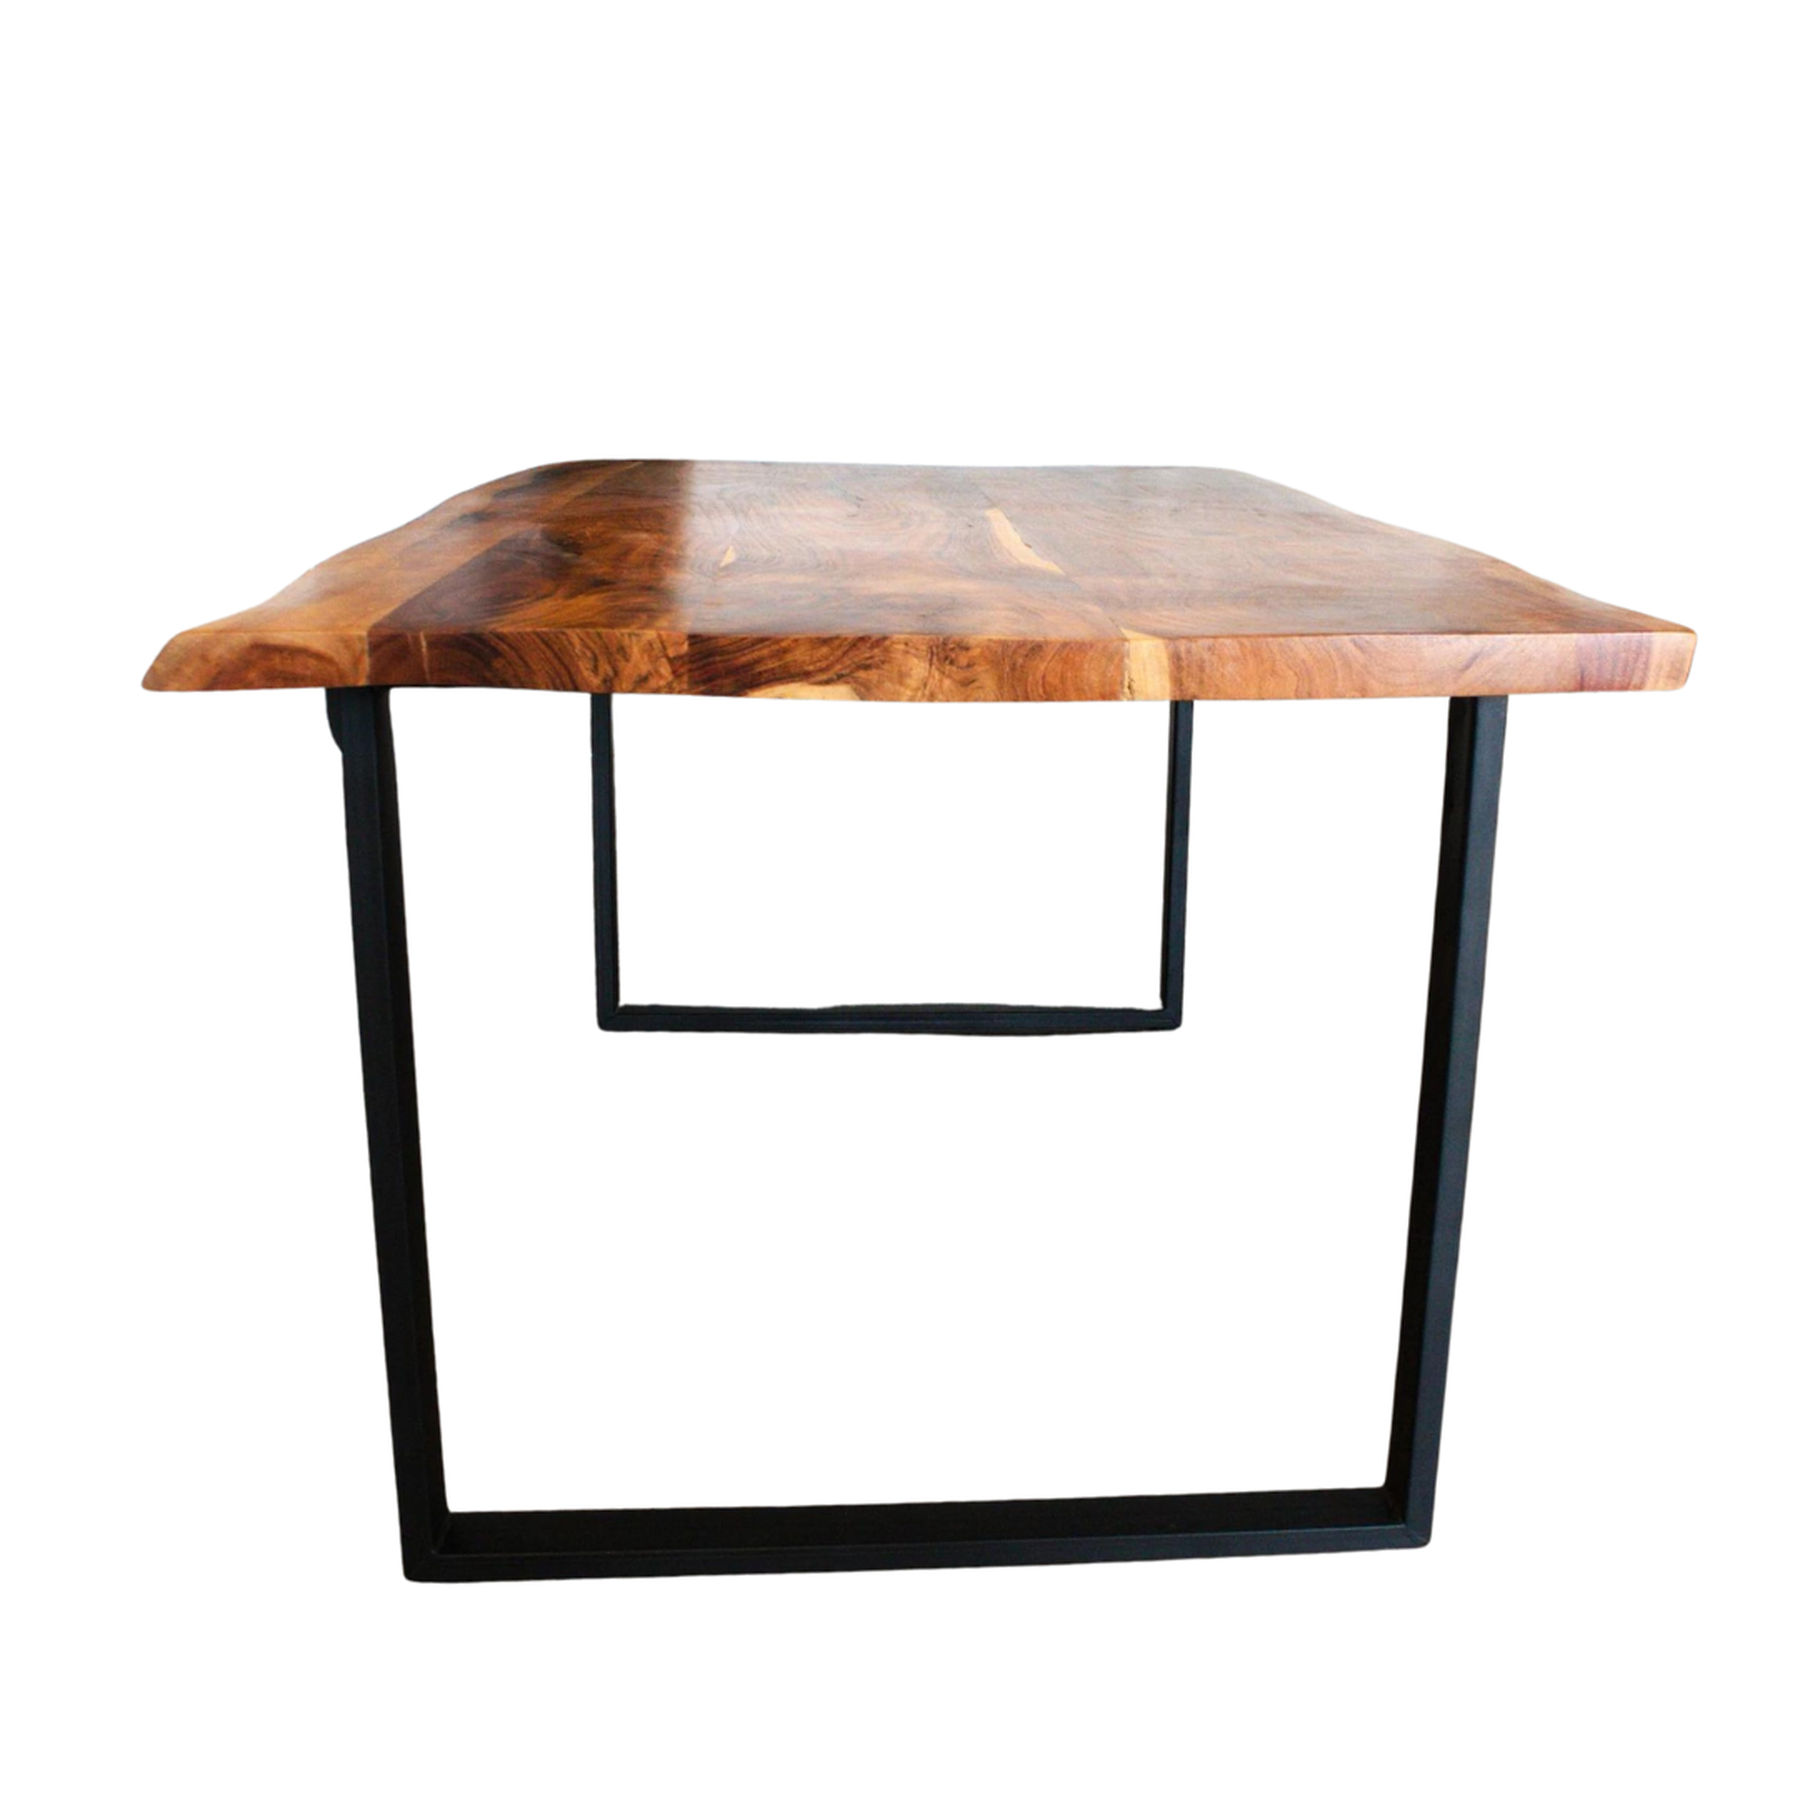 Table à manger Live Edge | Table industrielle en bois naturel avec pieds en fer noir | Table en bois massif